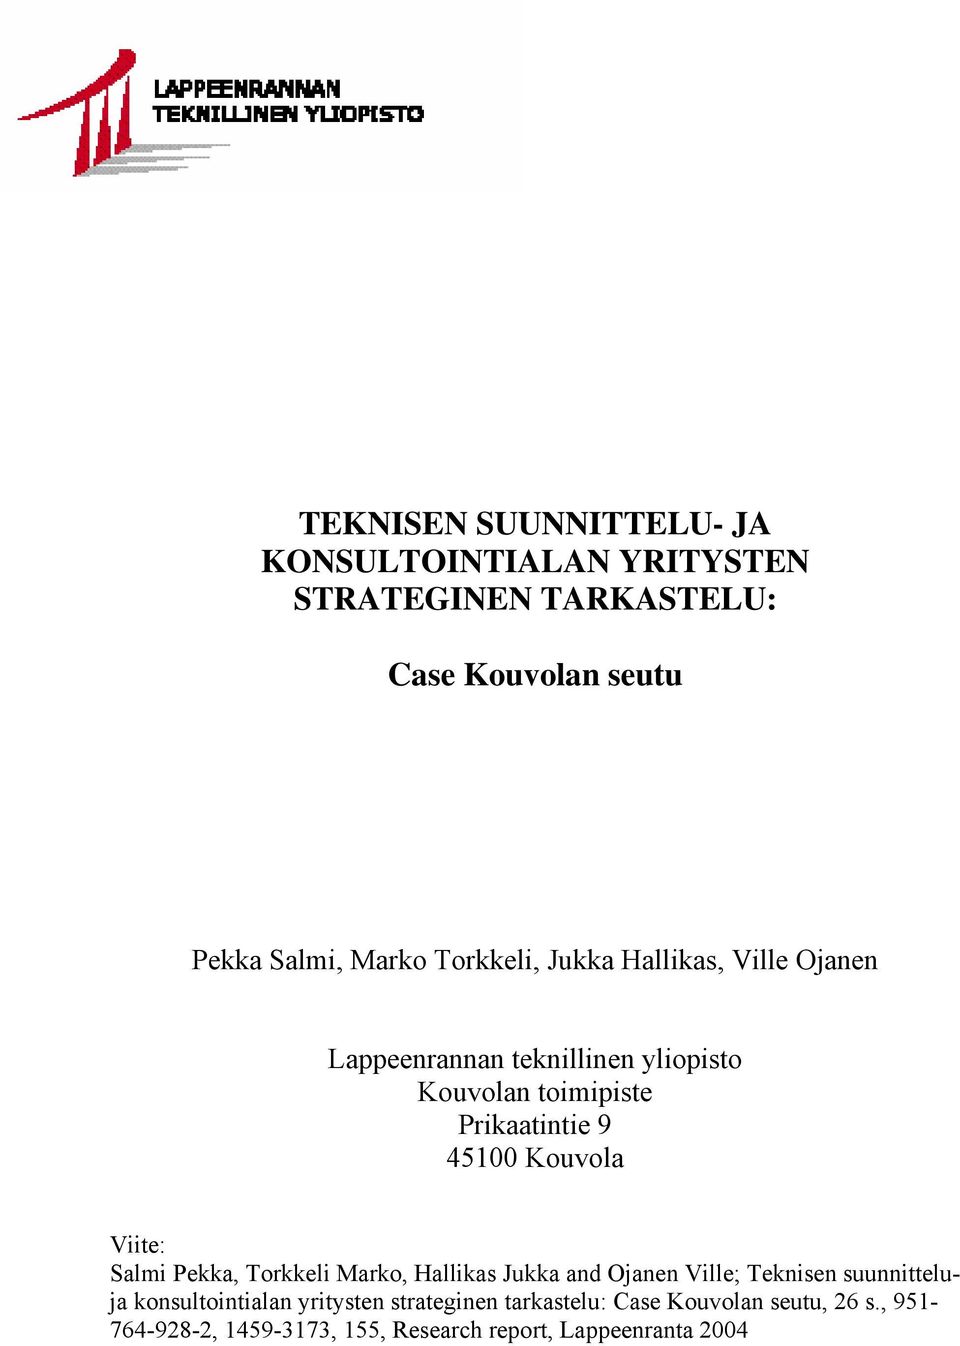 Kouvola Viite: Salmi Pekka, Torkkeli Marko, Hallikas Jukka and Ojanen Ville; Teknisen suunnitteluja konsultointialan